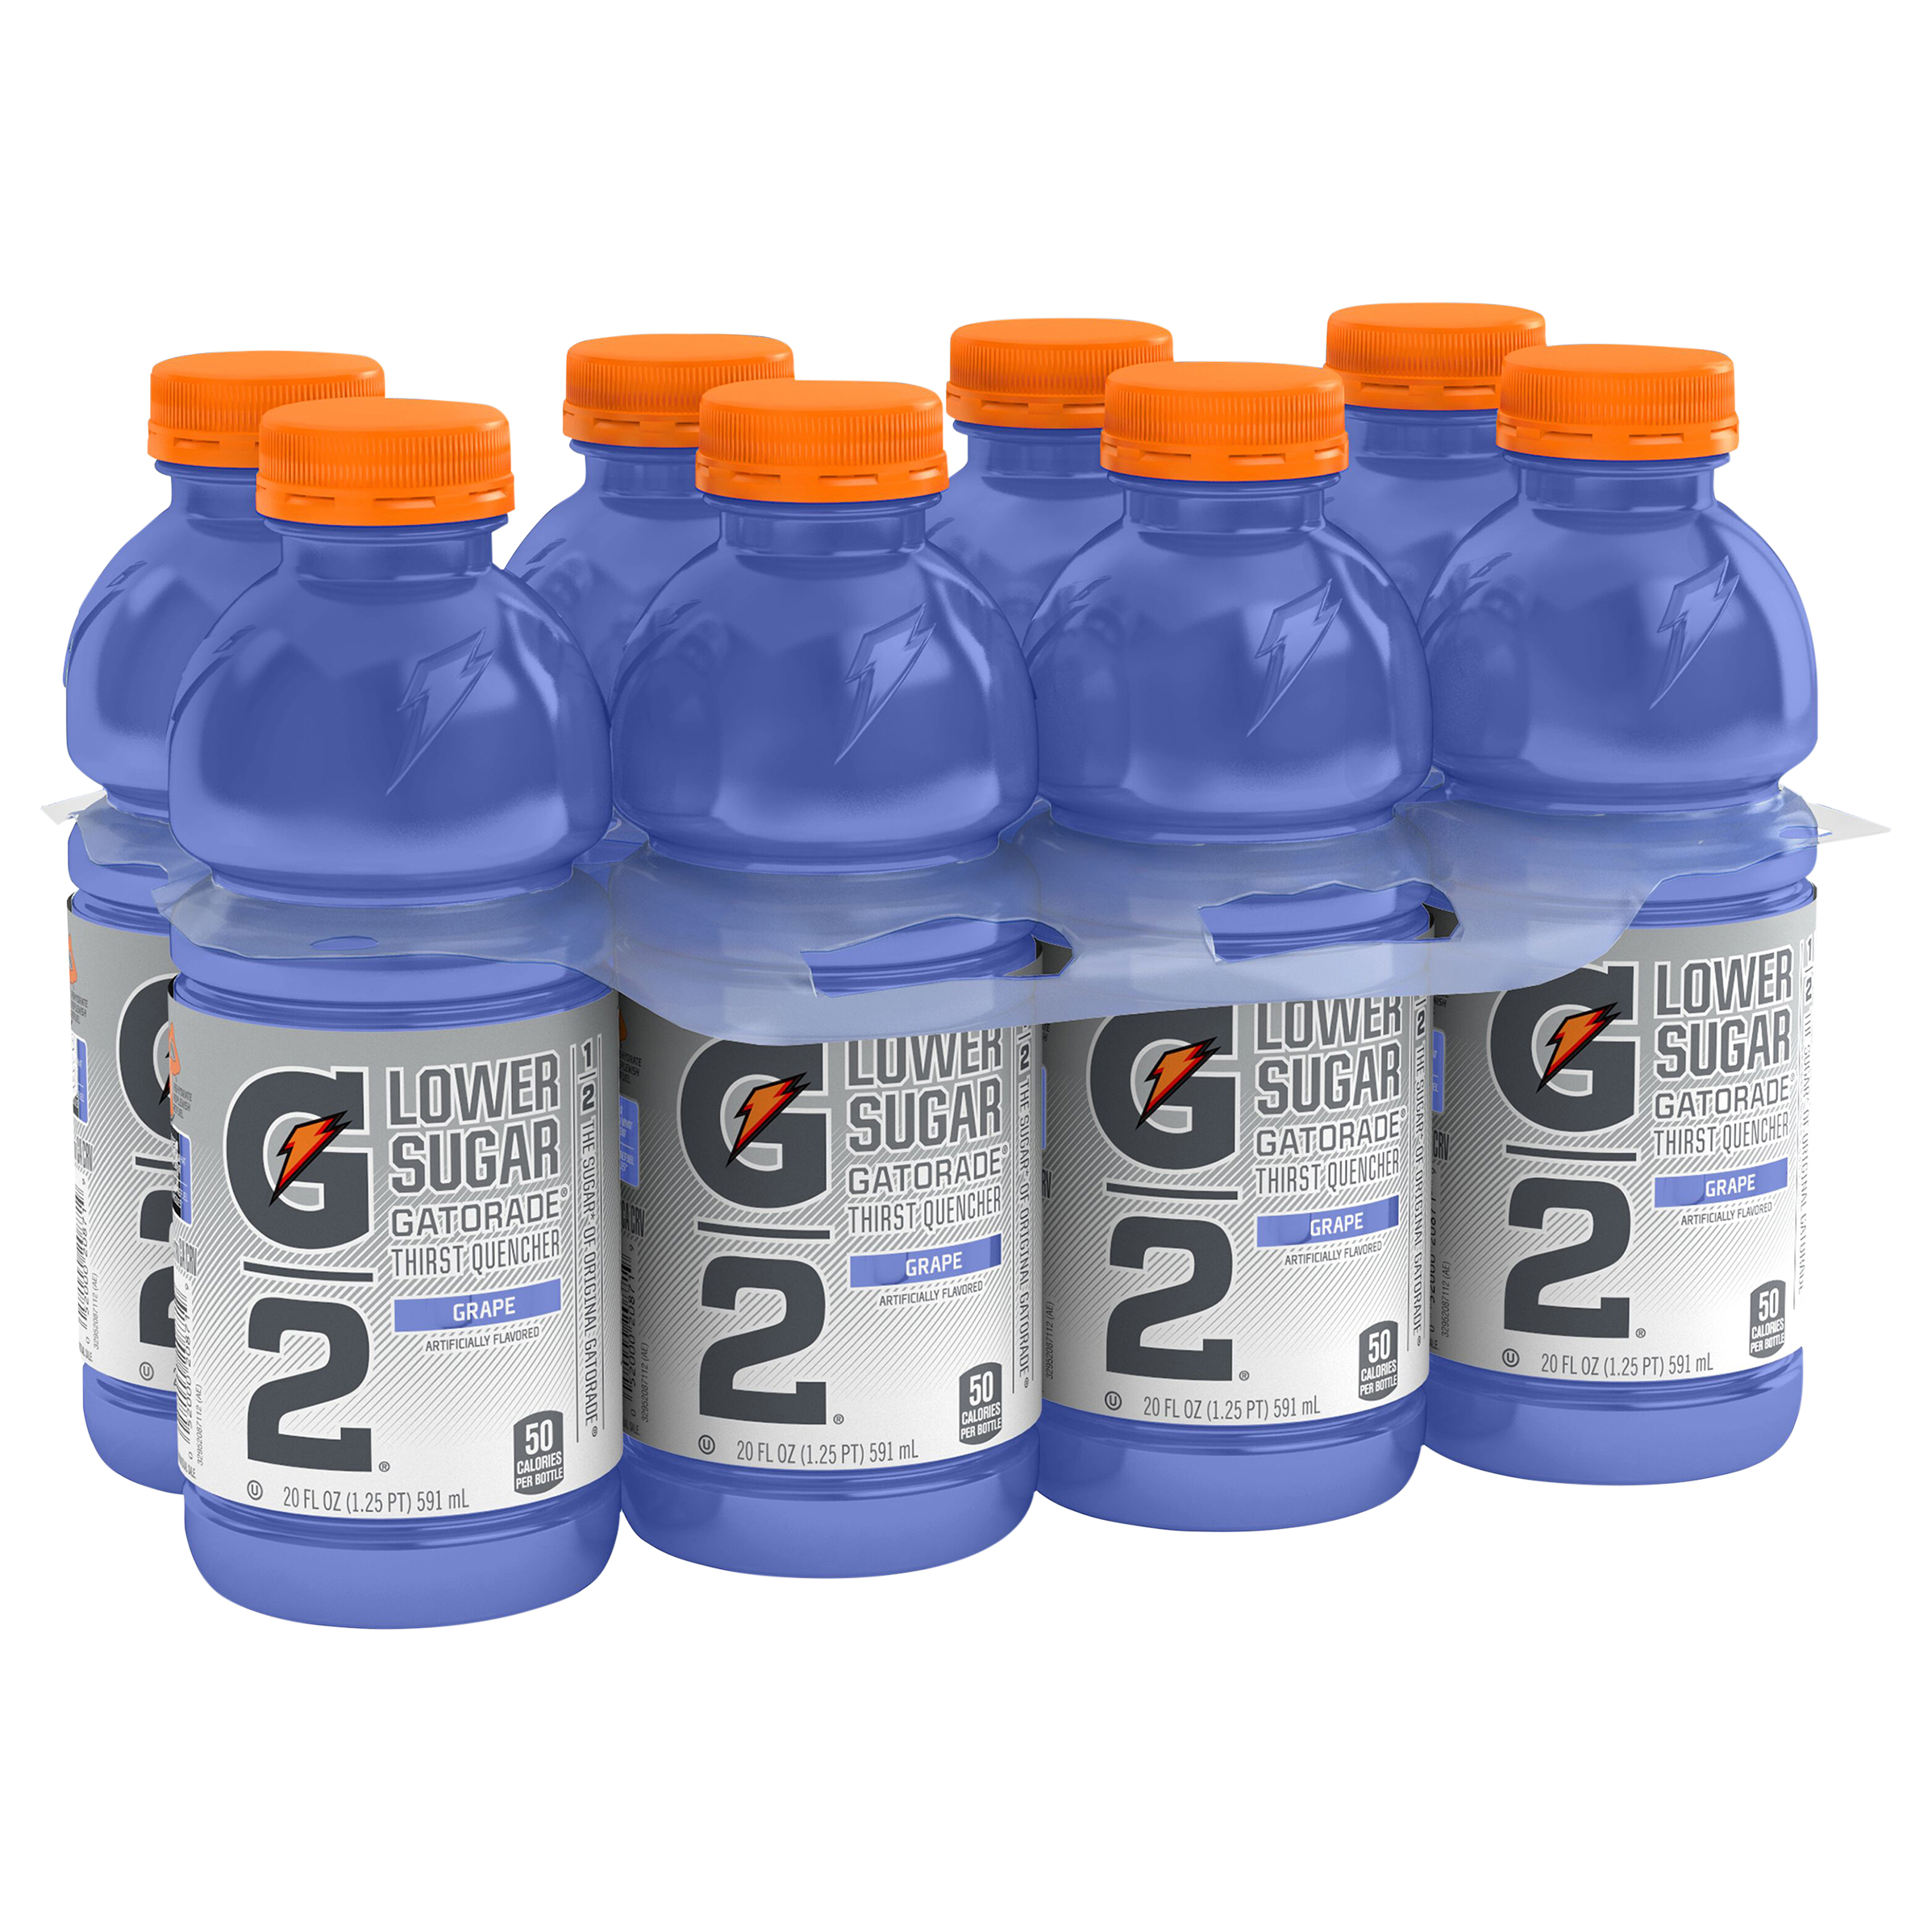 Gatorade Cool Blue Thirst Quencher Sports Drink, 32 oz Bottle